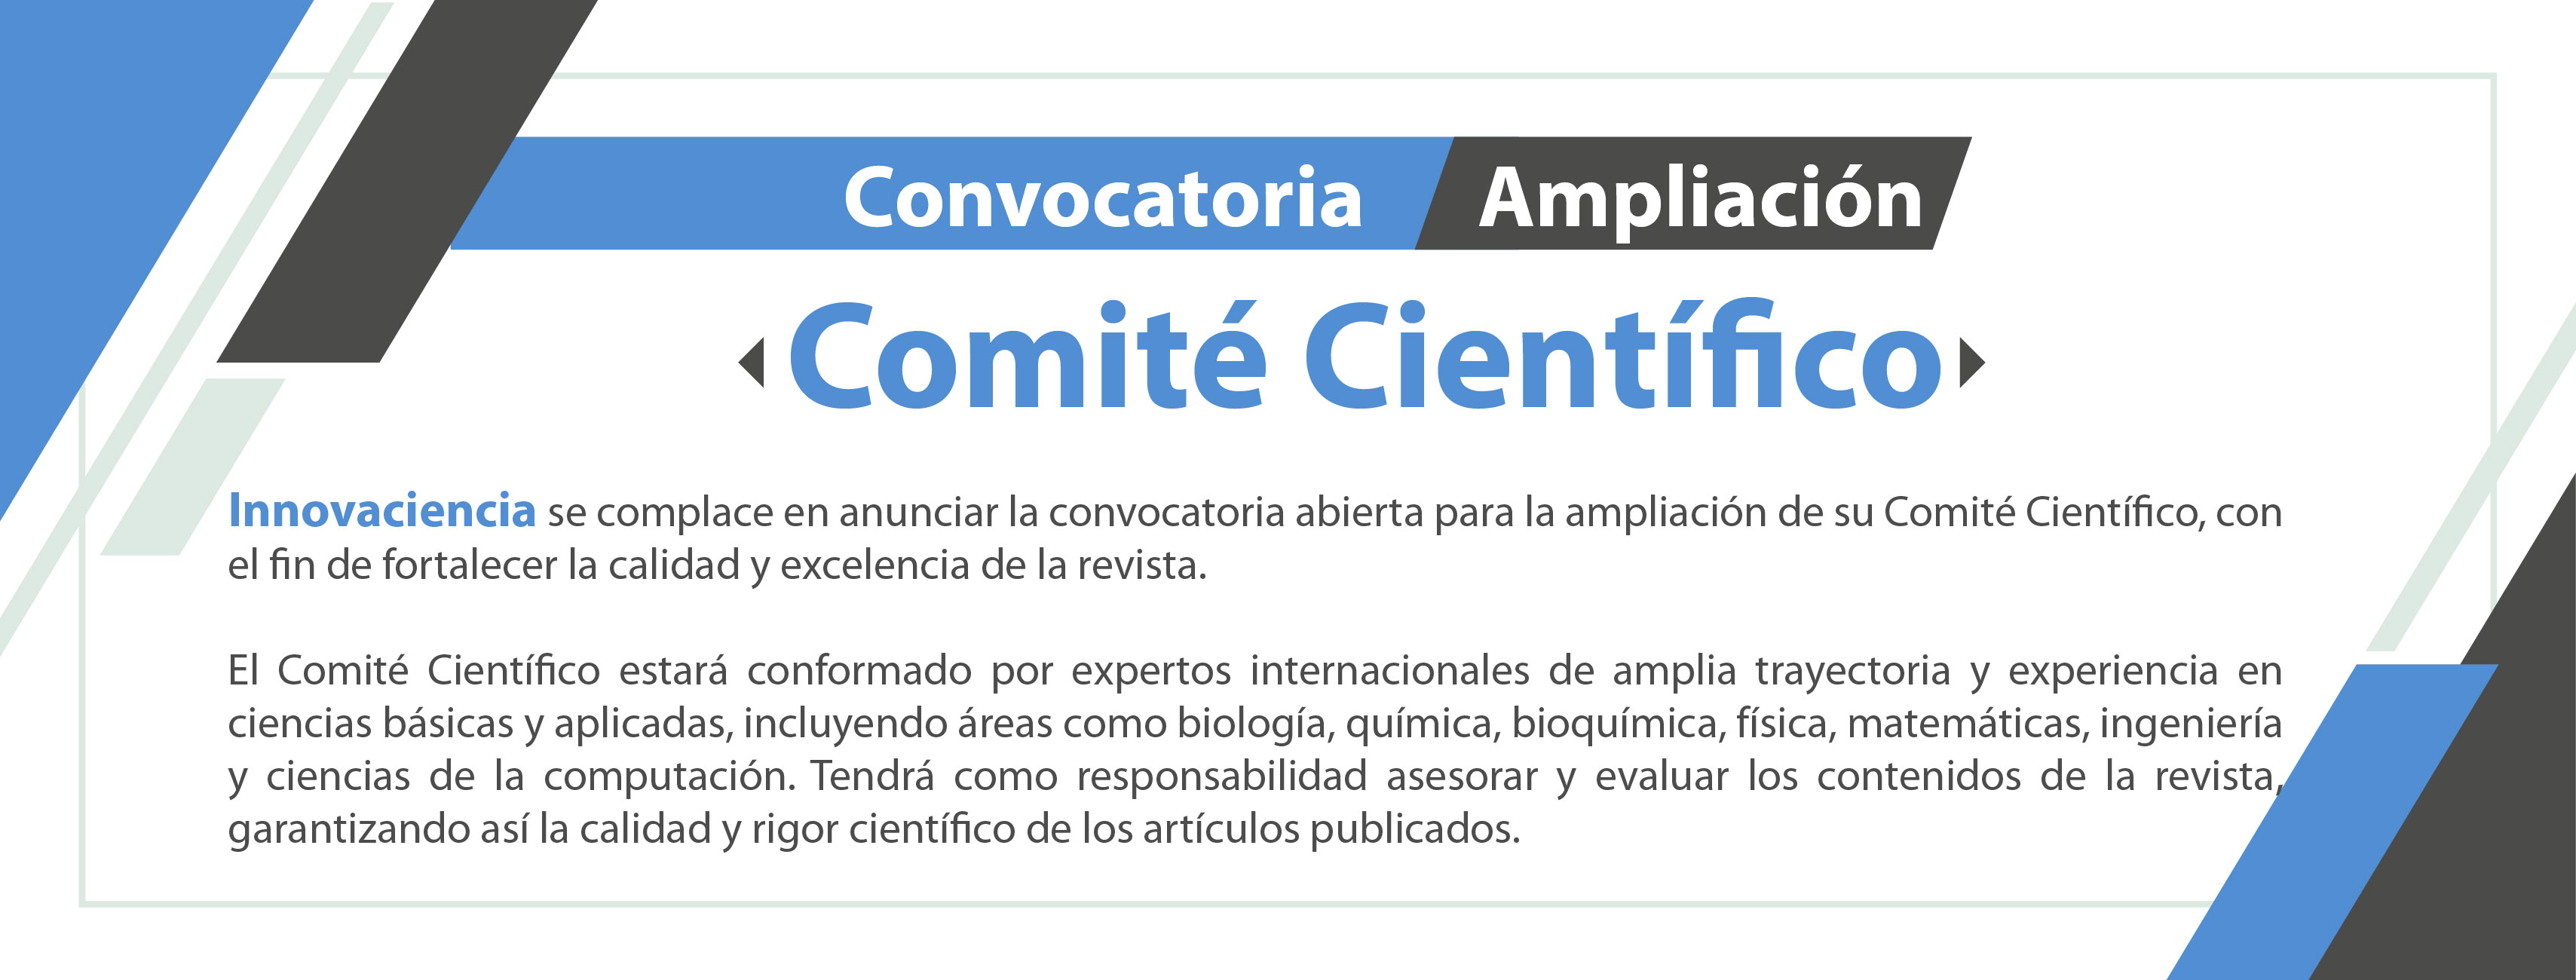 convocatoria_comité_científico_Mesa_de_trabajo_1.jpg